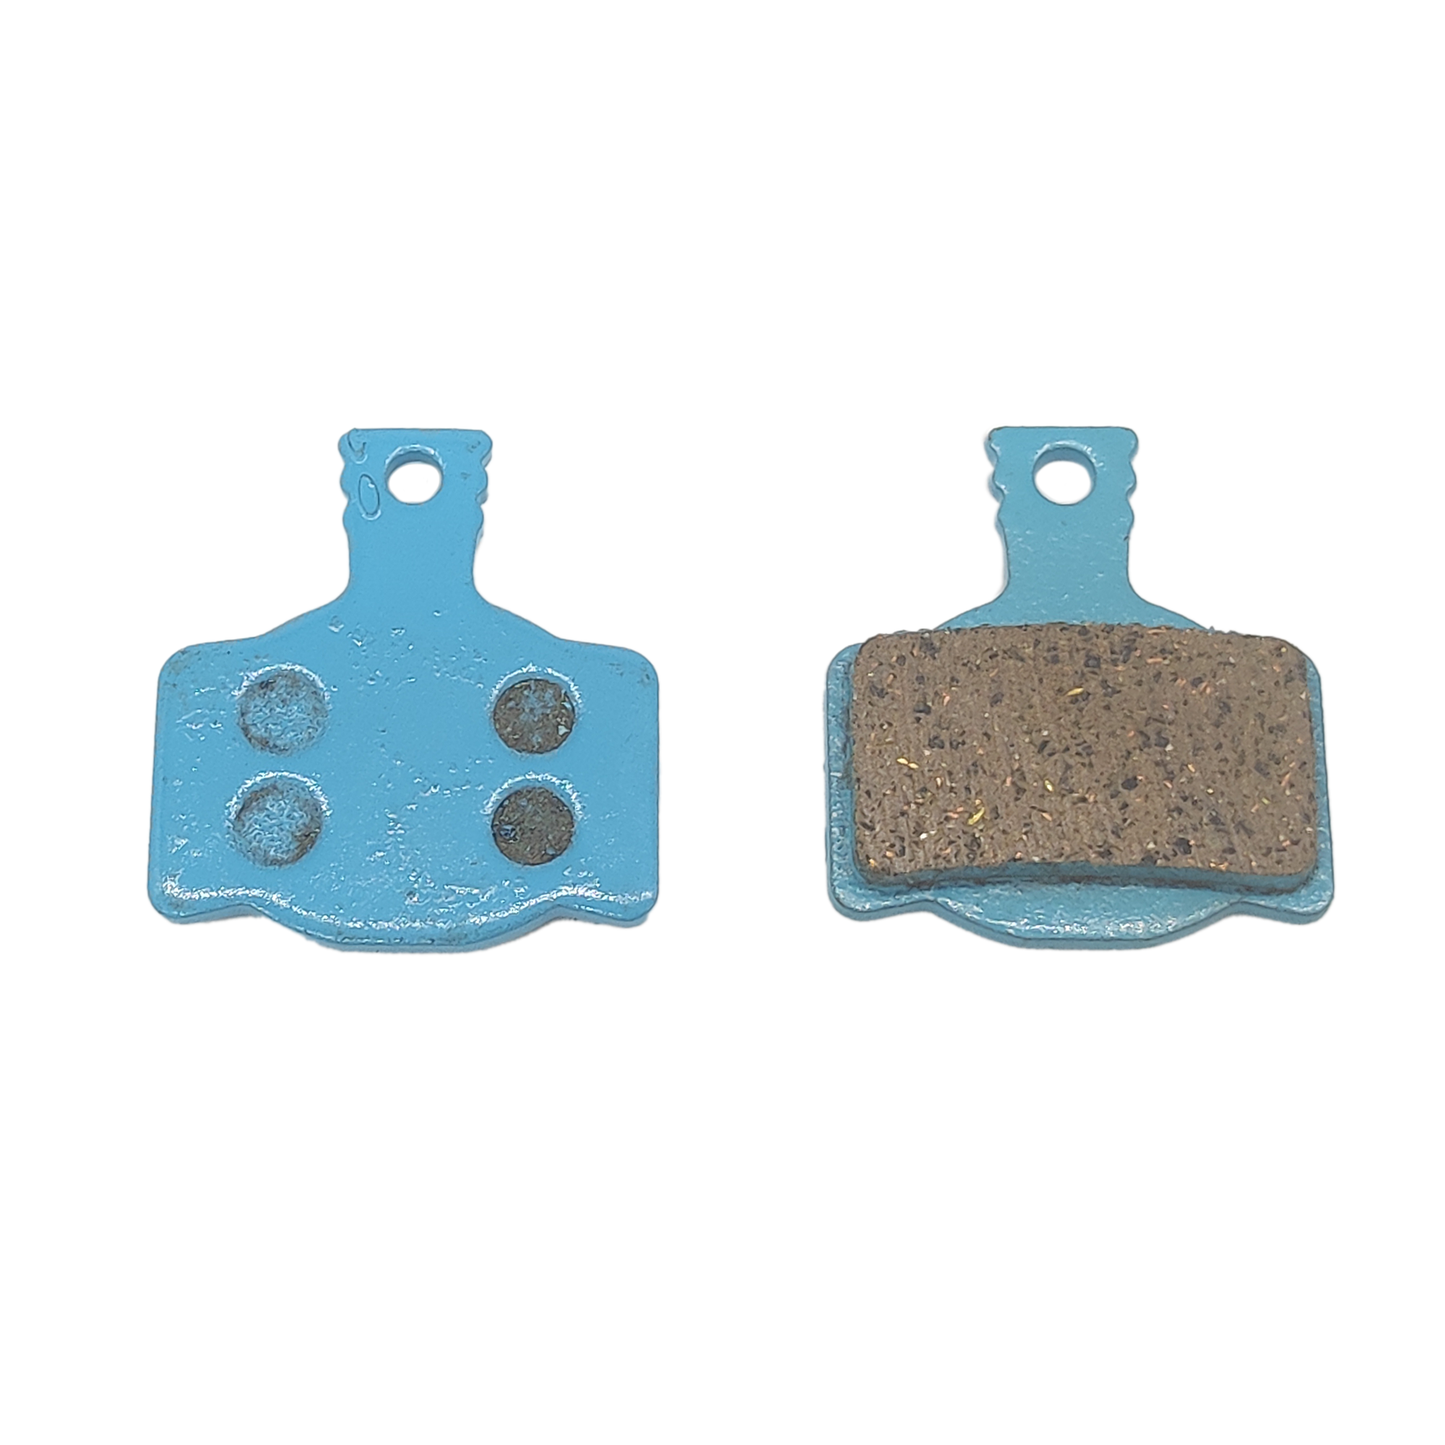 Ceramic brake pad for Magura MT2 MT4 MT6 MT8 pair